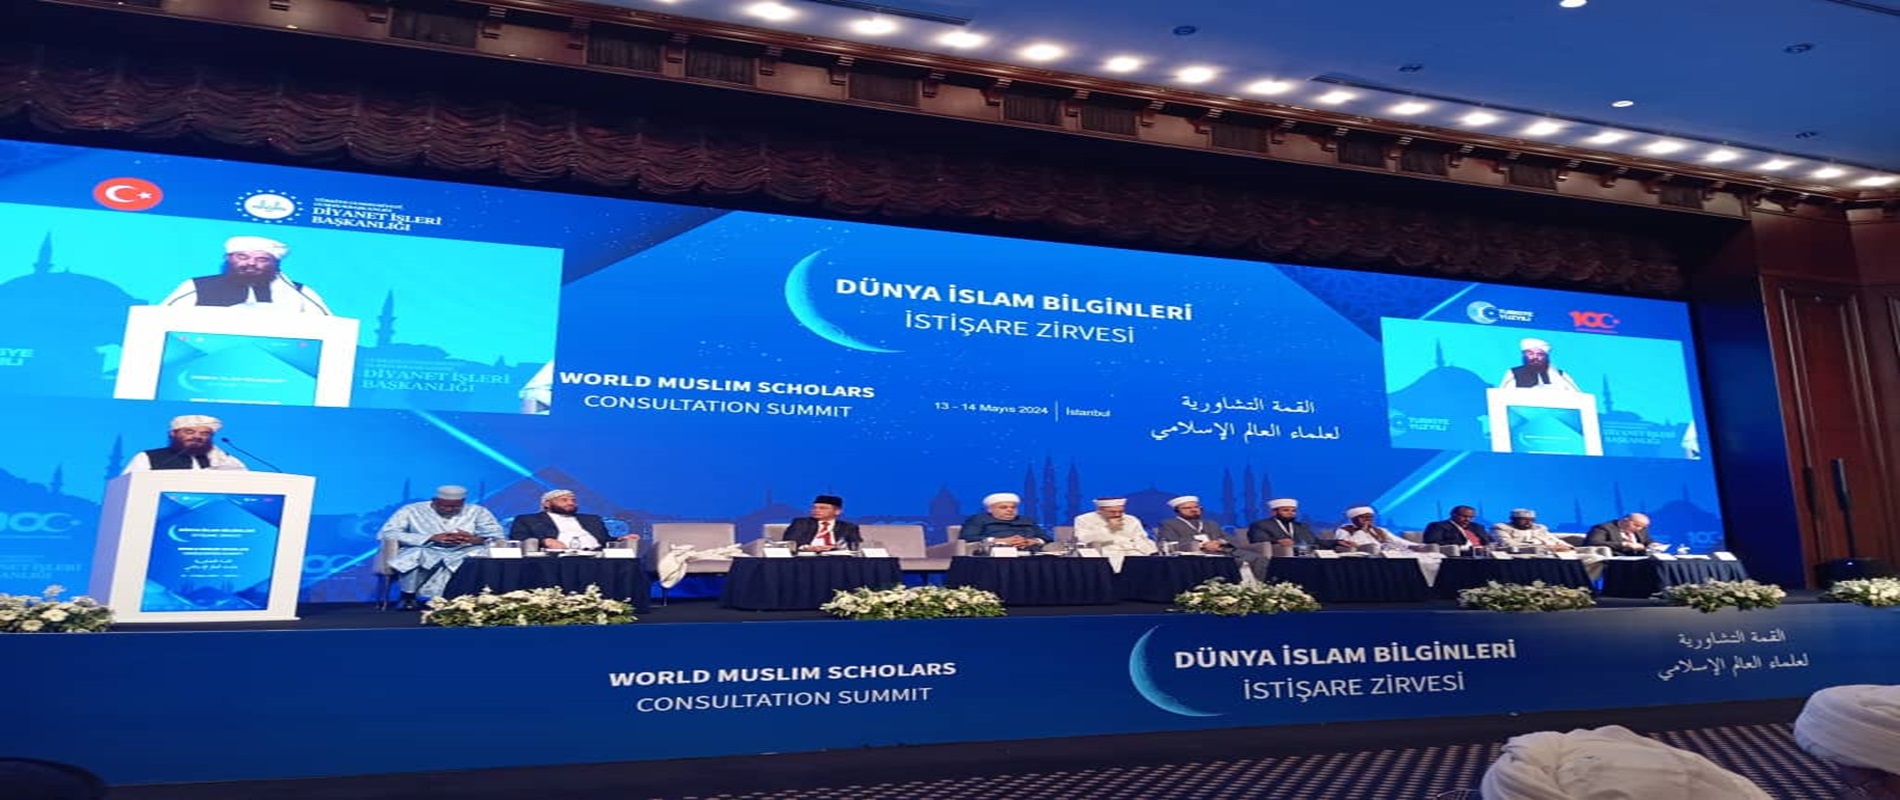 سخنرانی وزیر ارشاد، حج واوقاف در نشست مشورتی علمای جهان اسلام در شهر استانبول ترکیه